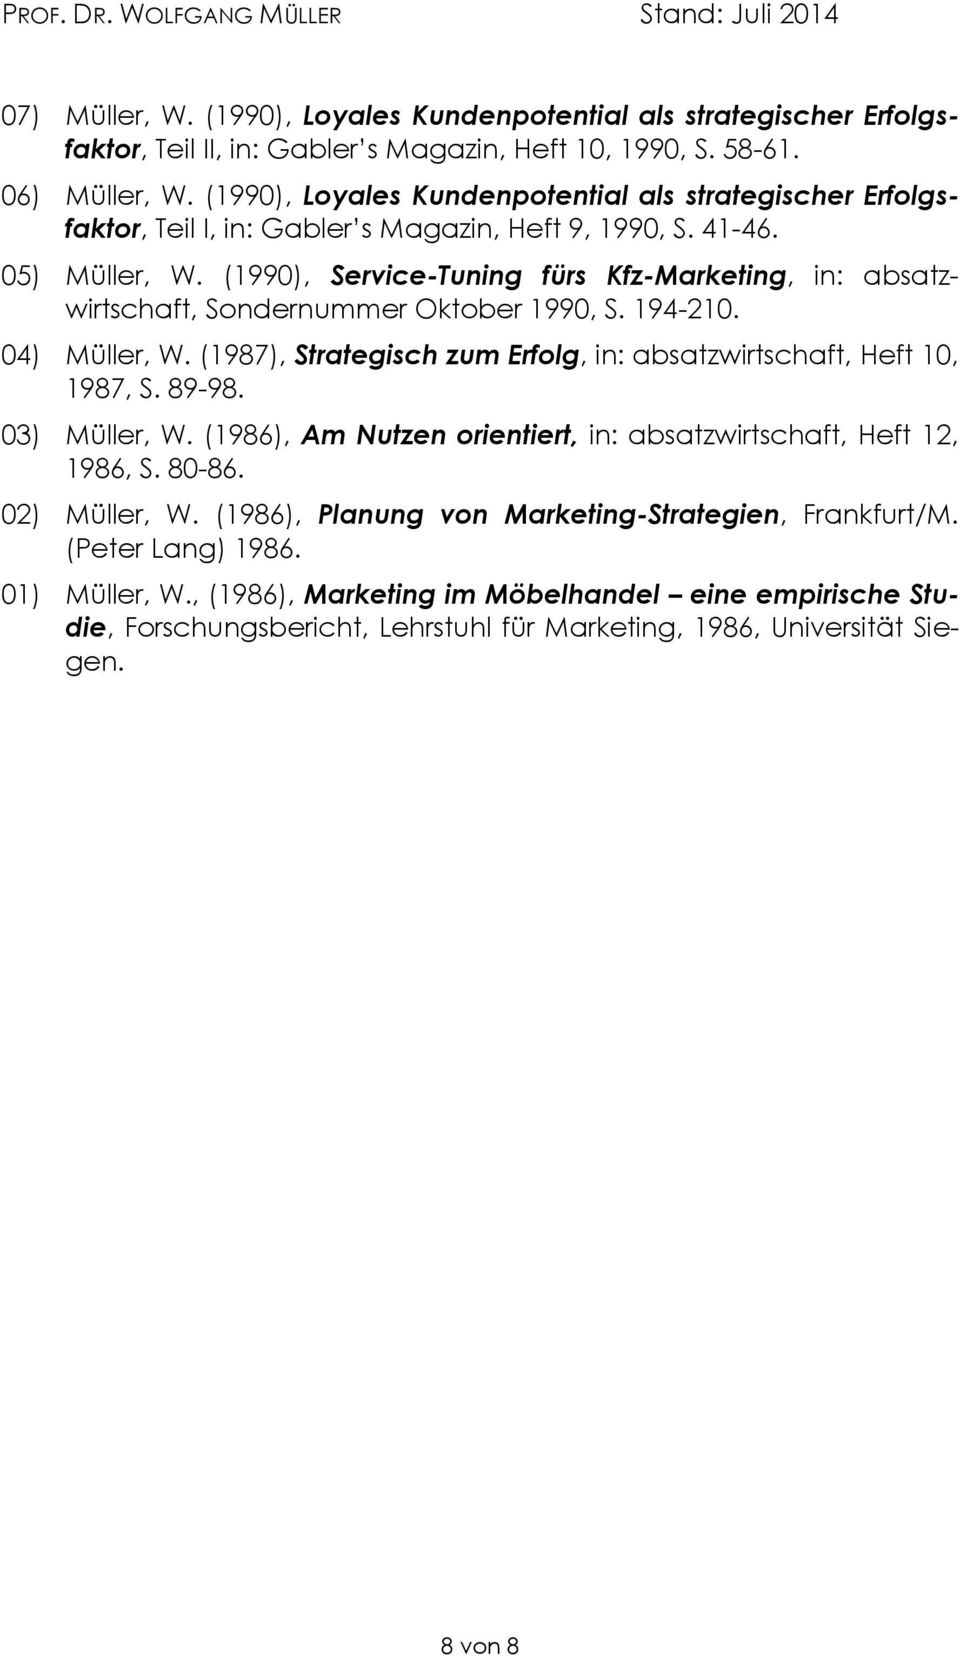 (1990), Service-Tuning fürs Kfz-Marketing, in: absatzwirtschaft, Sondernummer Oktober 1990, S. 194-210. 04) Müller, W. (1987), Strategisch zum Erfolg, in: absatzwirtschaft, Heft 10, 1987, S. 89-98.